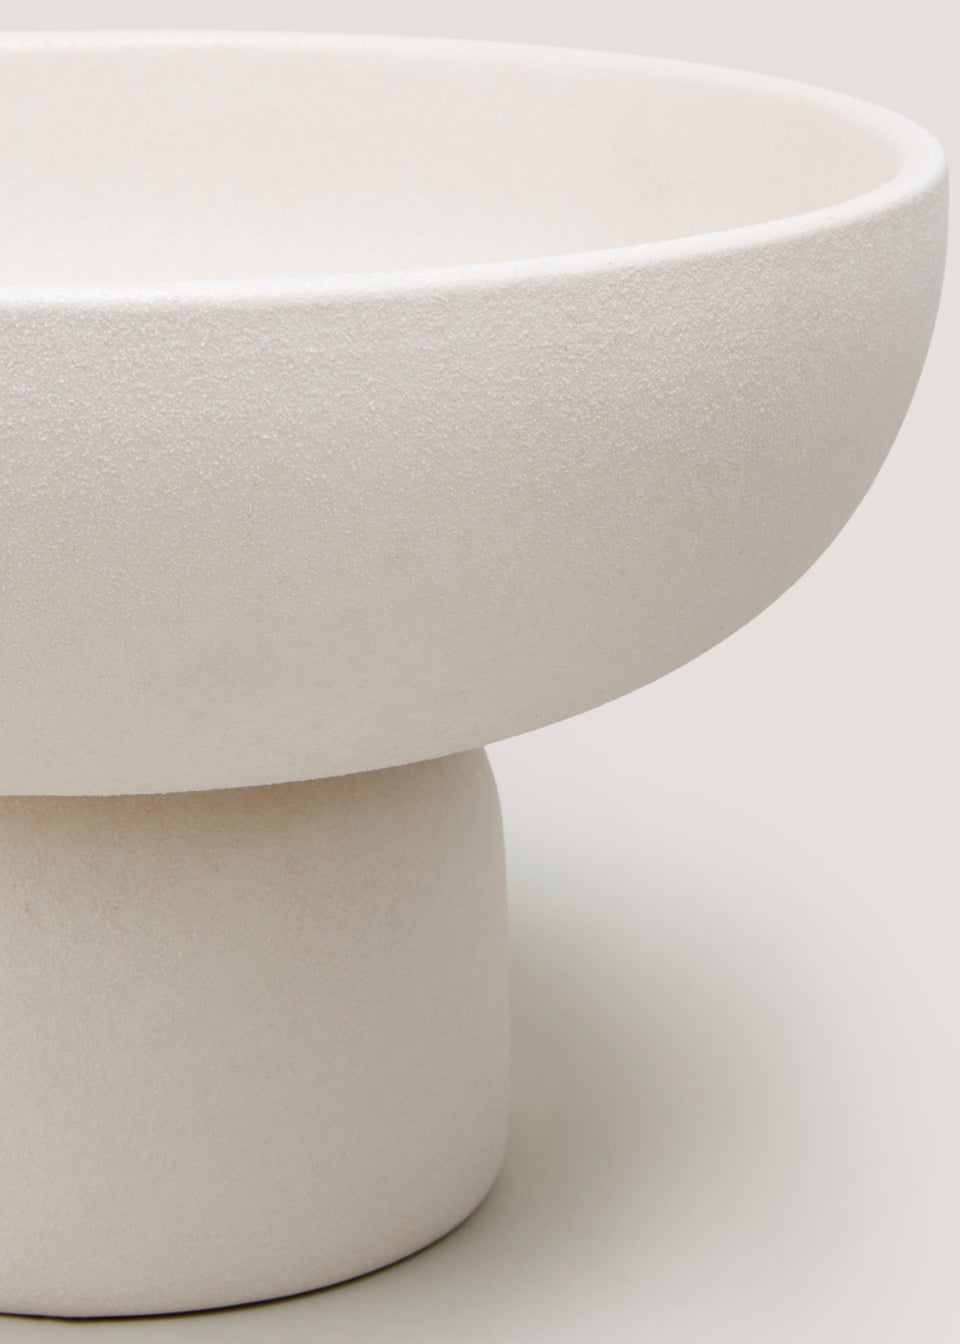 Cream Decorative Bowl (18cm x 29cm)